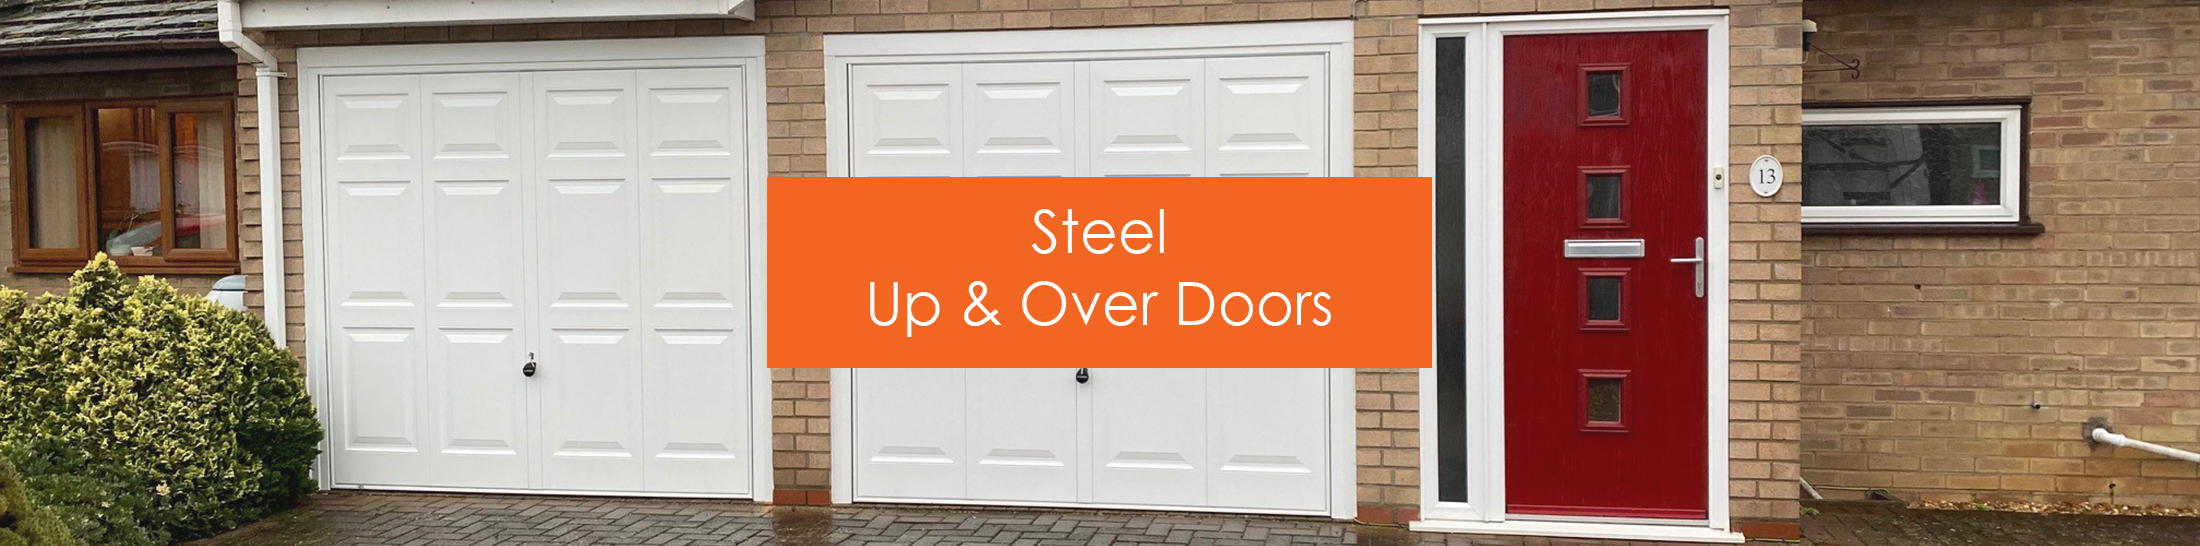 Steel up and over garage doors 